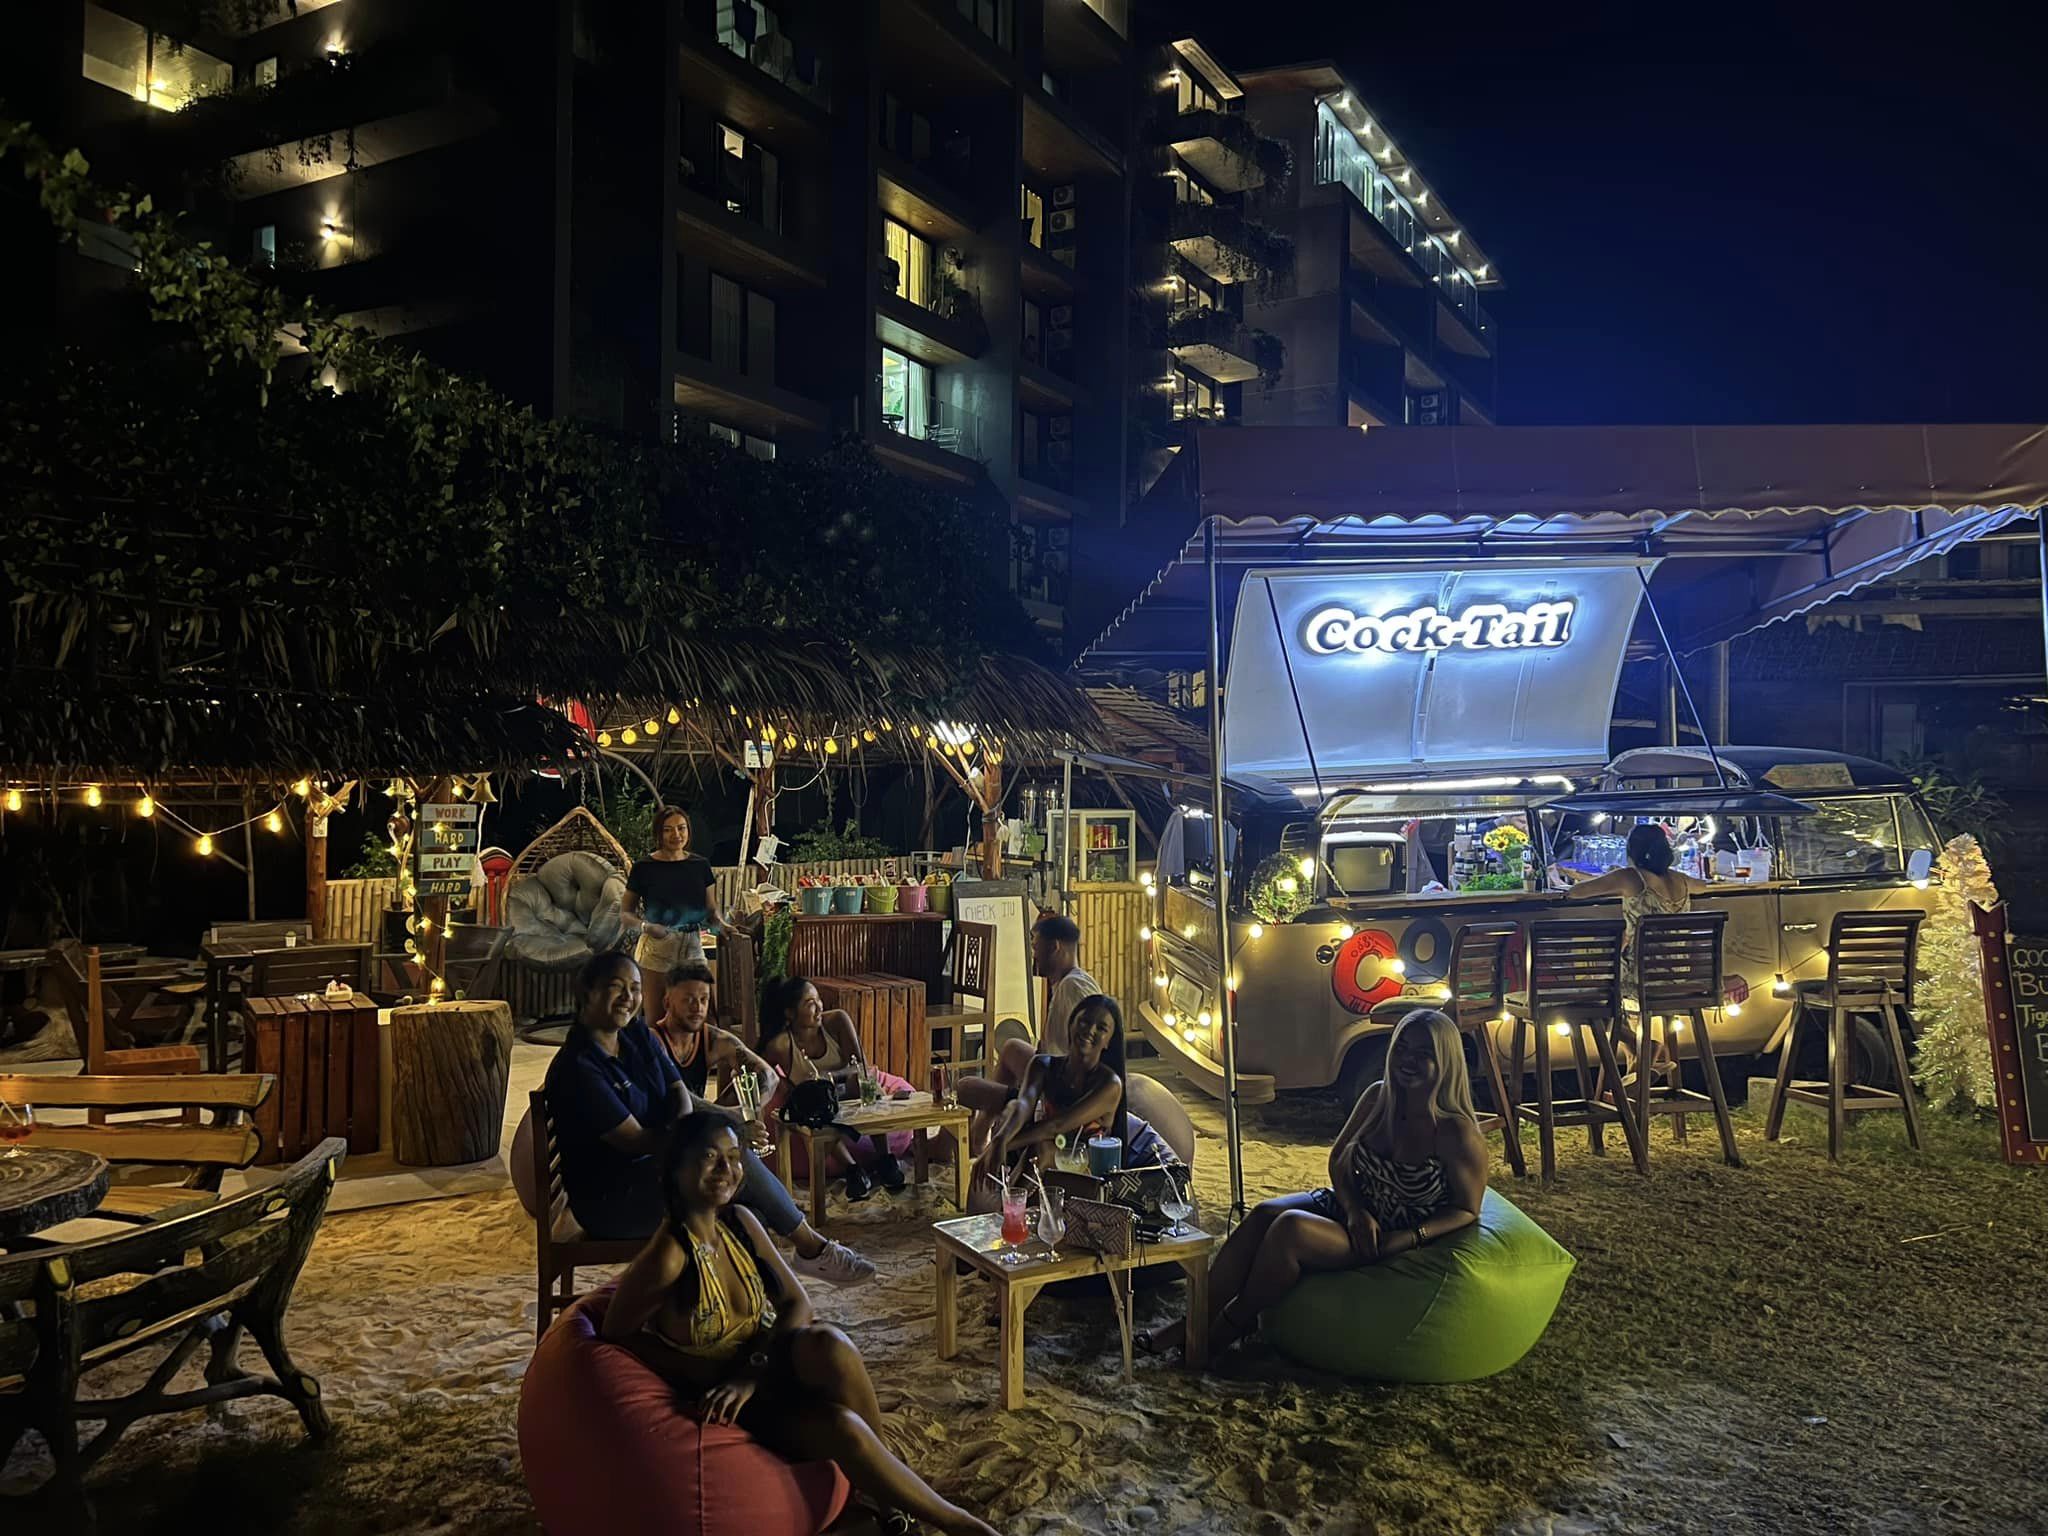 Cock-Tail, Cafe and Bar (Cock-Tail, Cafe and Bar) : Phuket (ภูเก็ต)